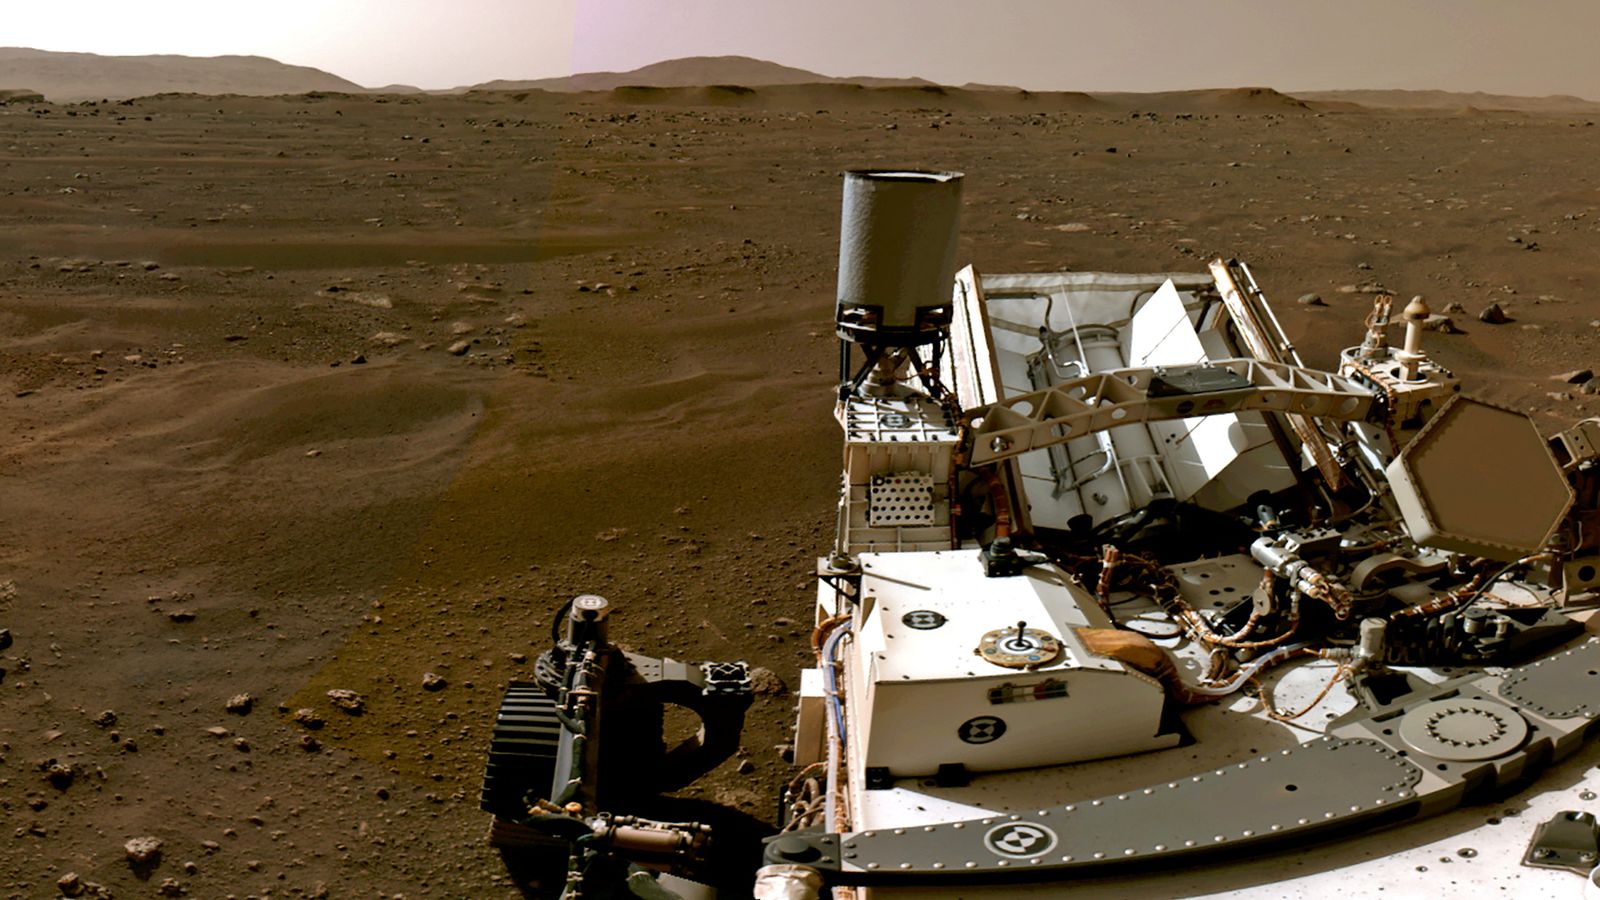 ناسا تتمكن من إنتاج الأكسجين على المريخ |  أخبار العلوم والتكنولوجيا